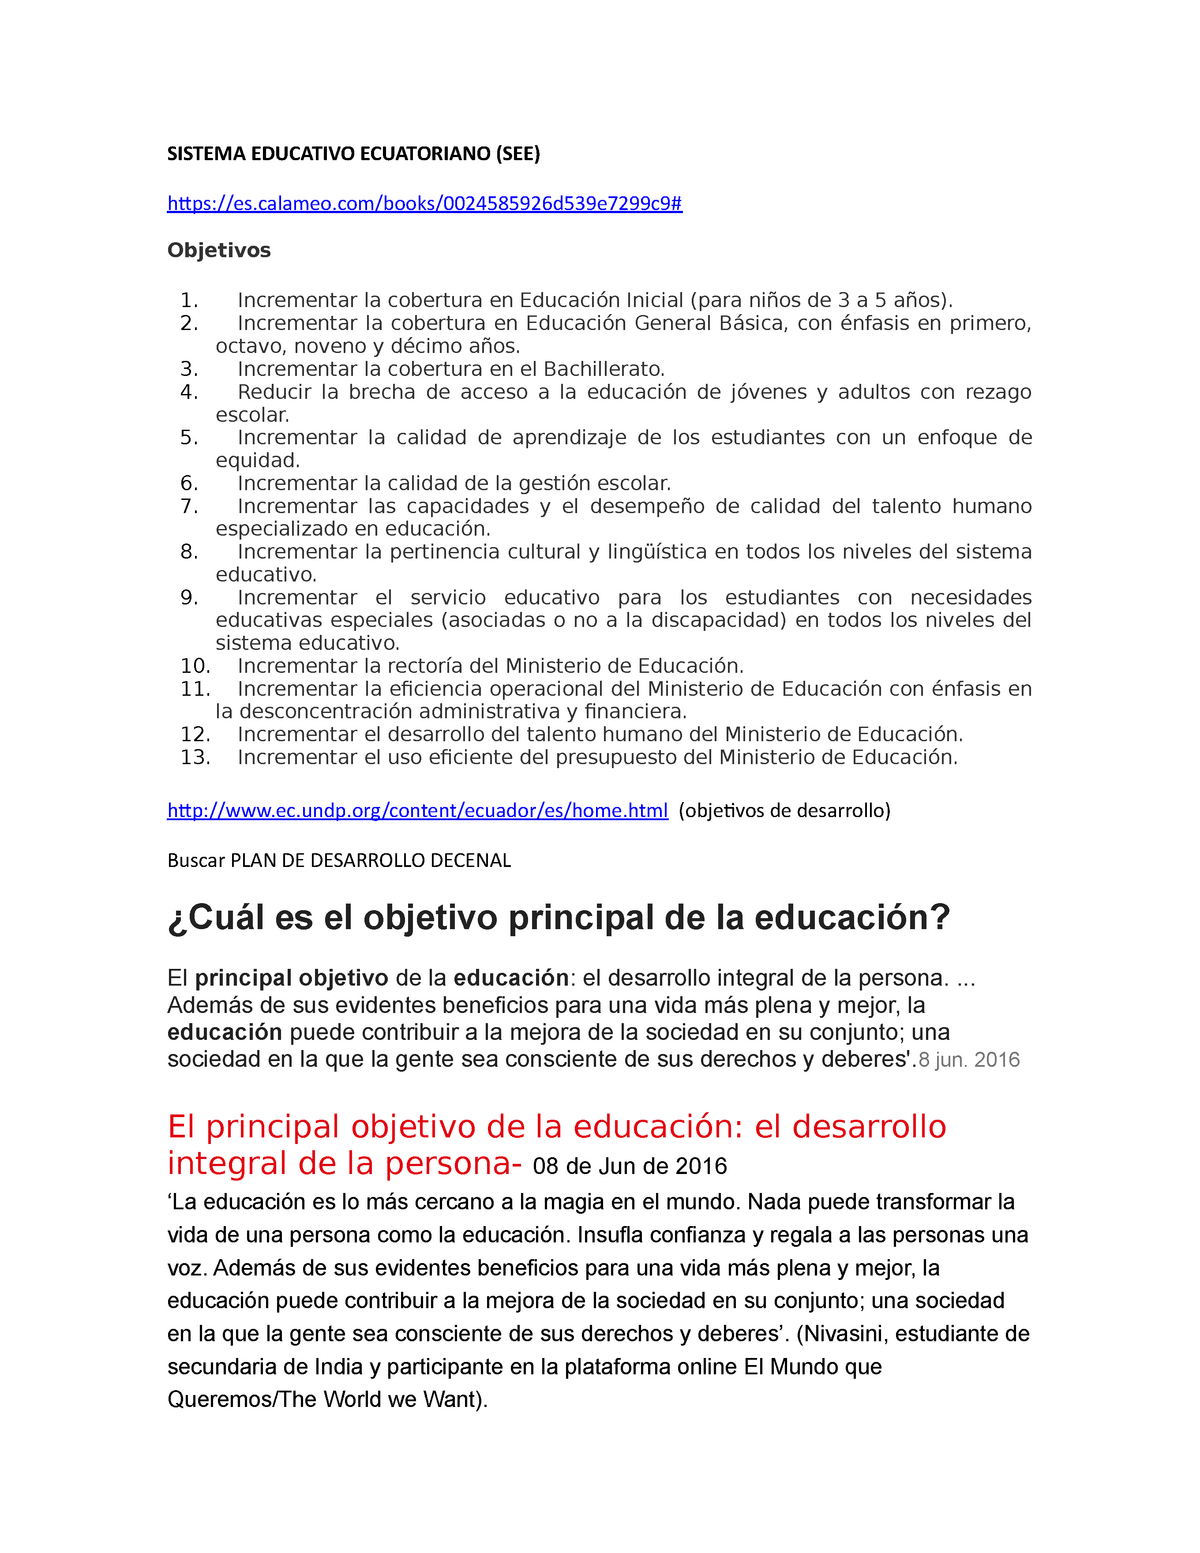 Objetivos de le educacion ecuaotirna y la politica educatva - SISTEMA EDUCATIVO  ECUATORIANO (SEE) - Studocu